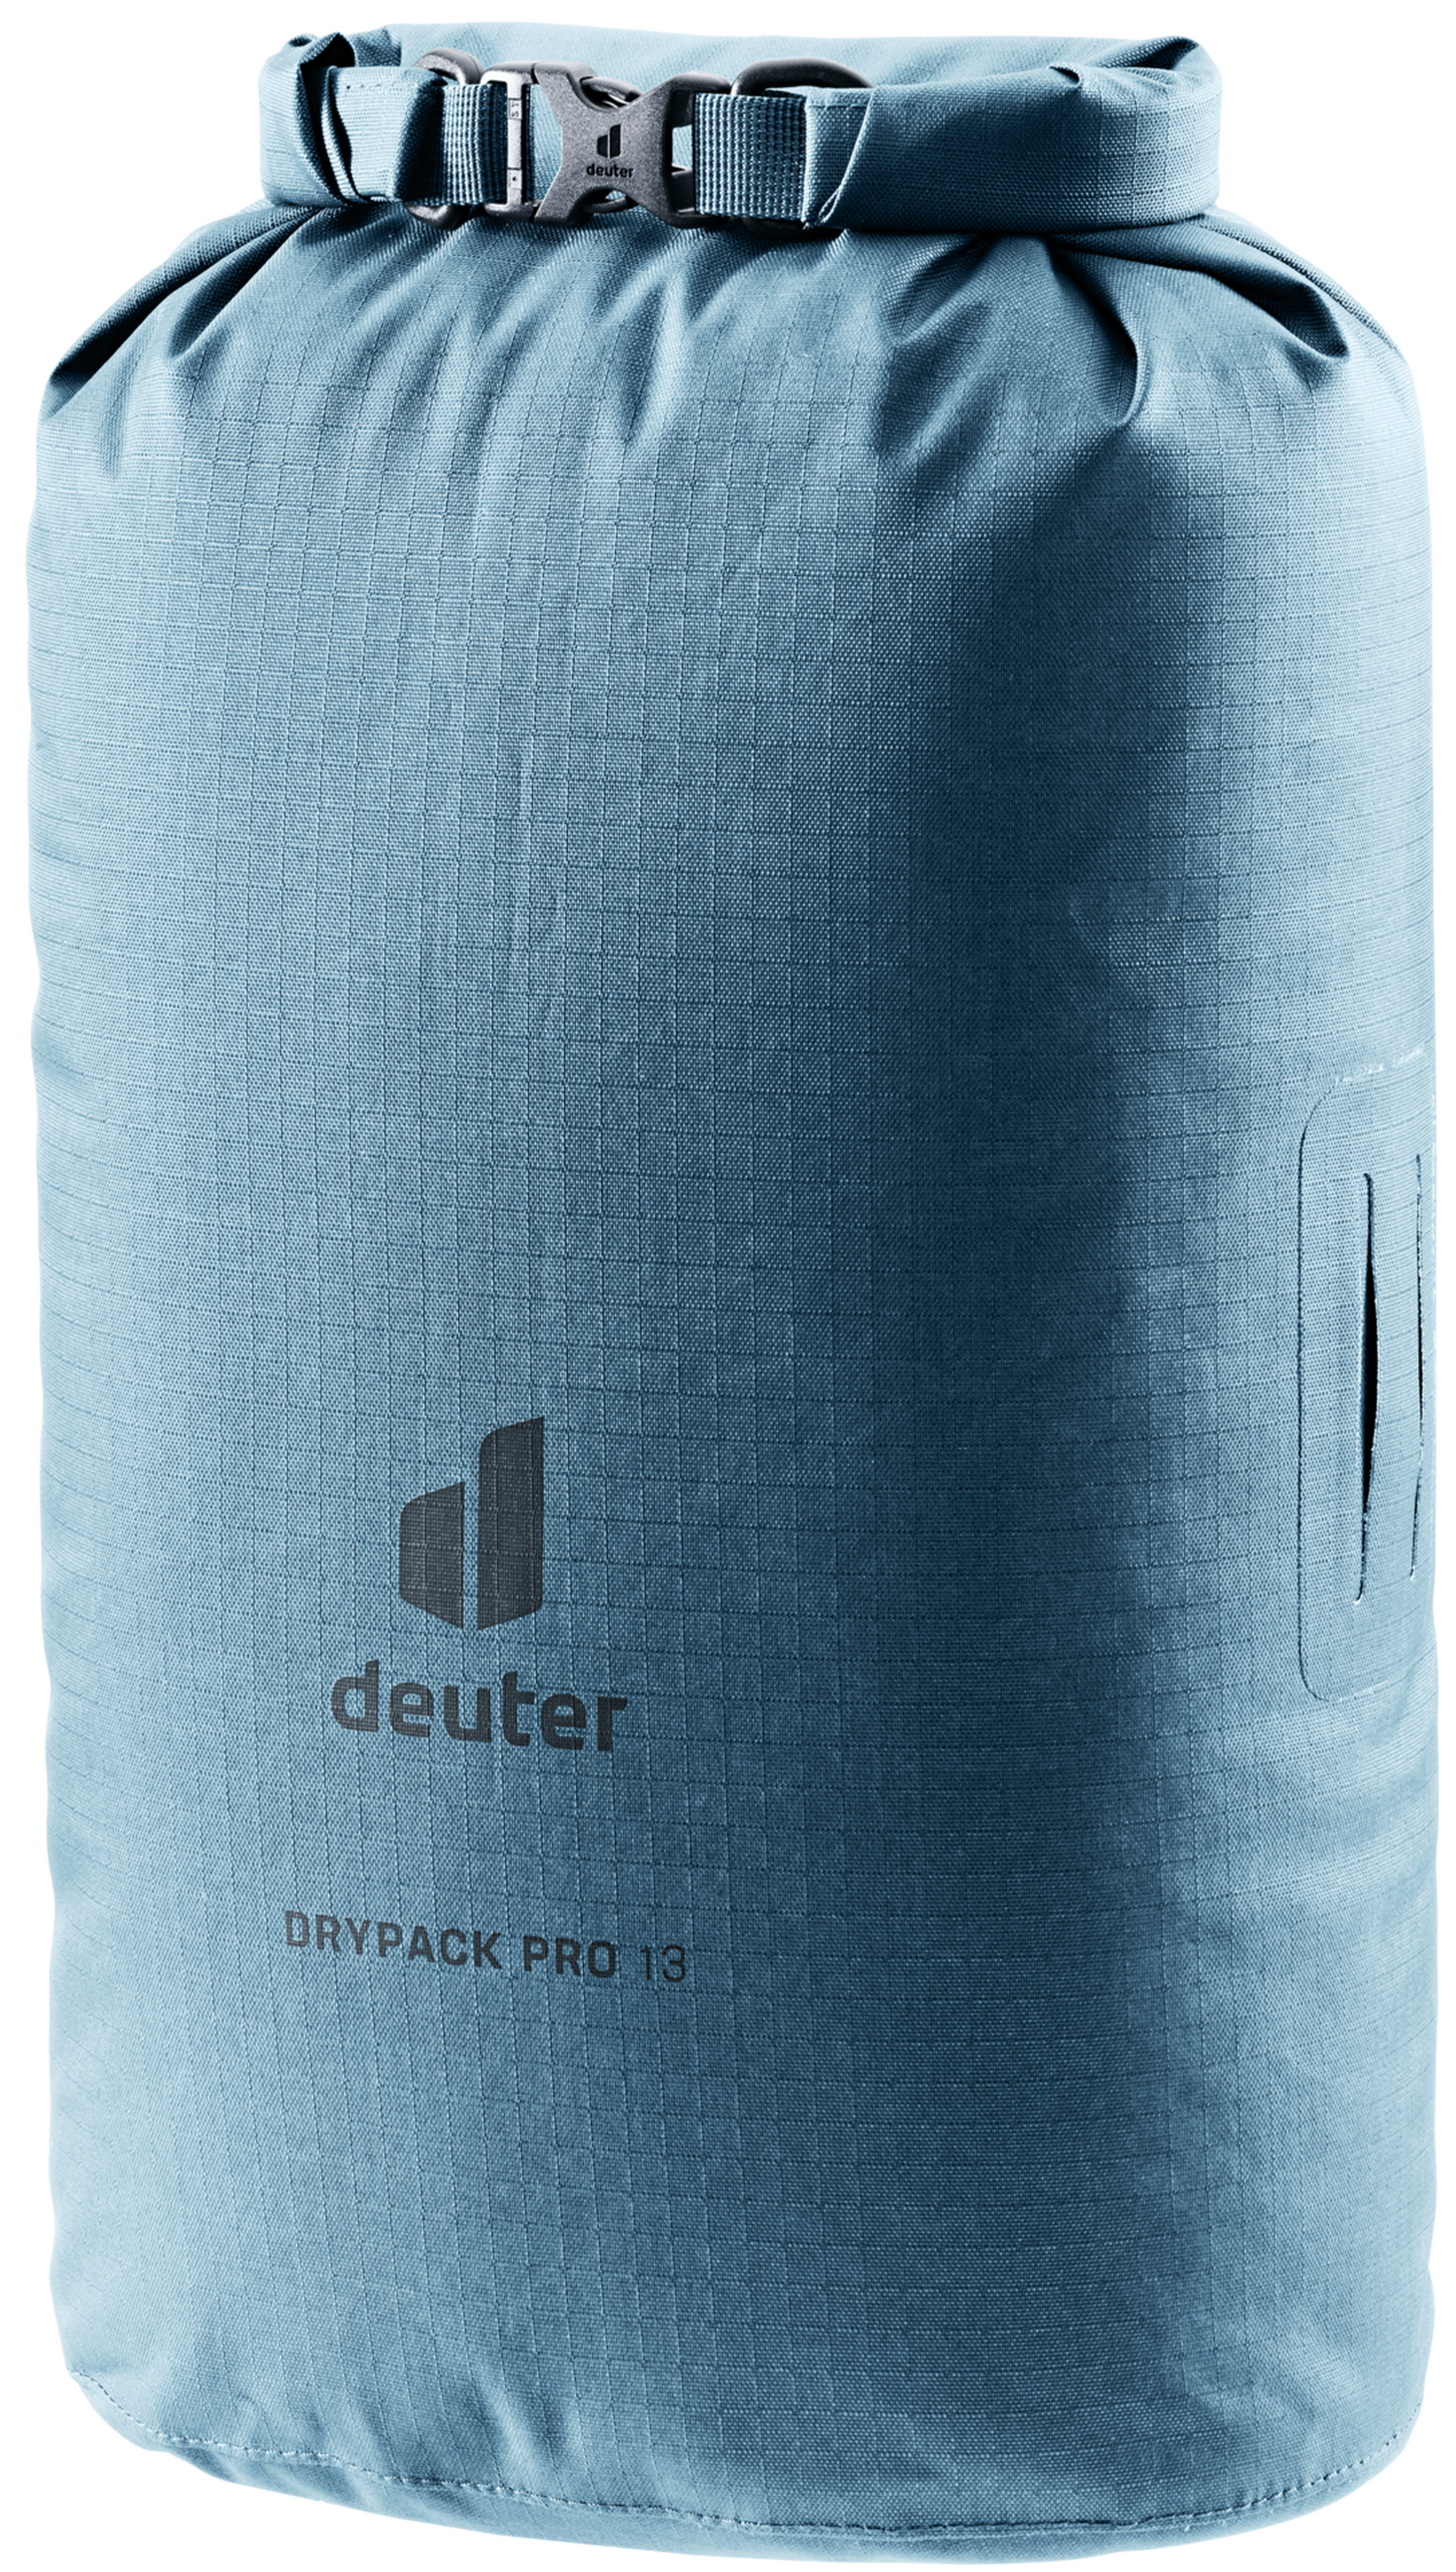 Vorgestellt: Deuter Drypack Pro Drybags